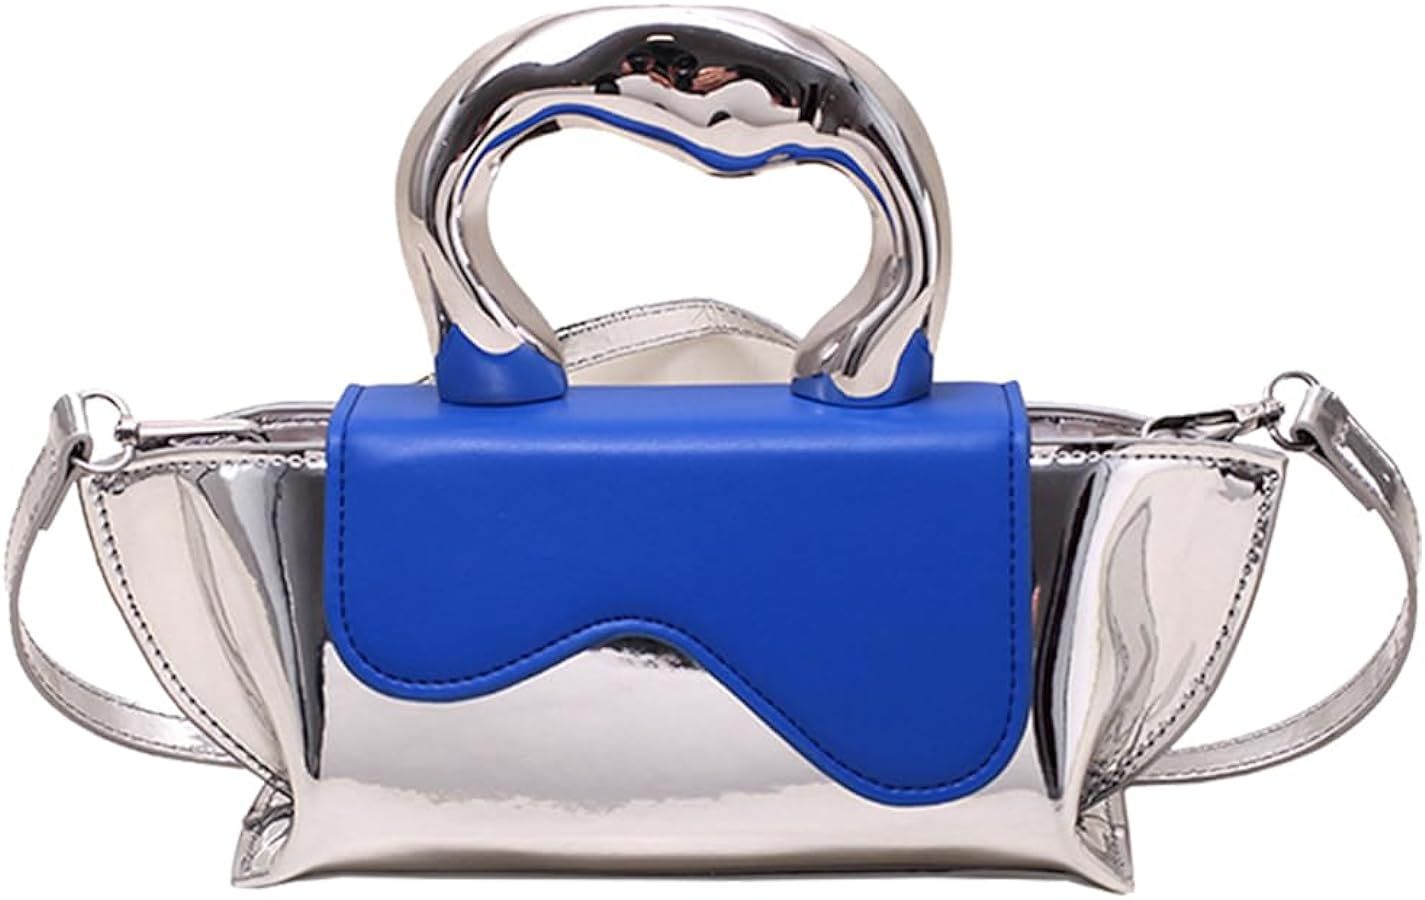 Silver Purse Evening Bag Women Y2k Hobo Bag Tote Handbag Chic Clutch Purses Crossbody Bag Sparkly... | Amazon (US)